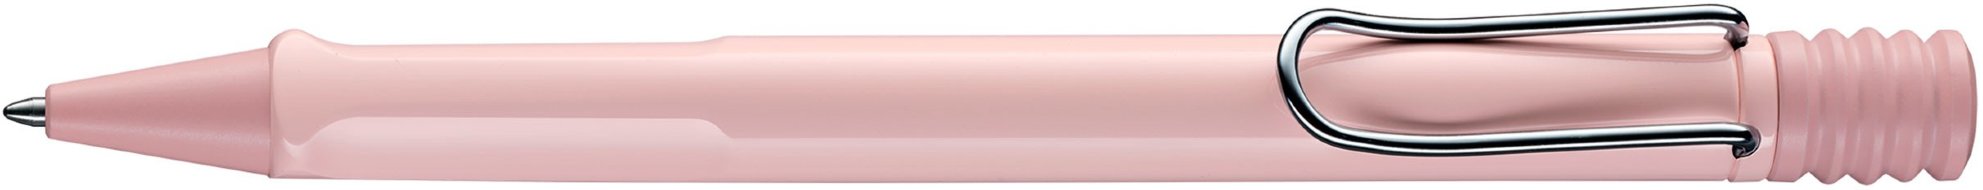 Шариковая ручка Lamy safari Pastel Powder Rose Special Edition 2019